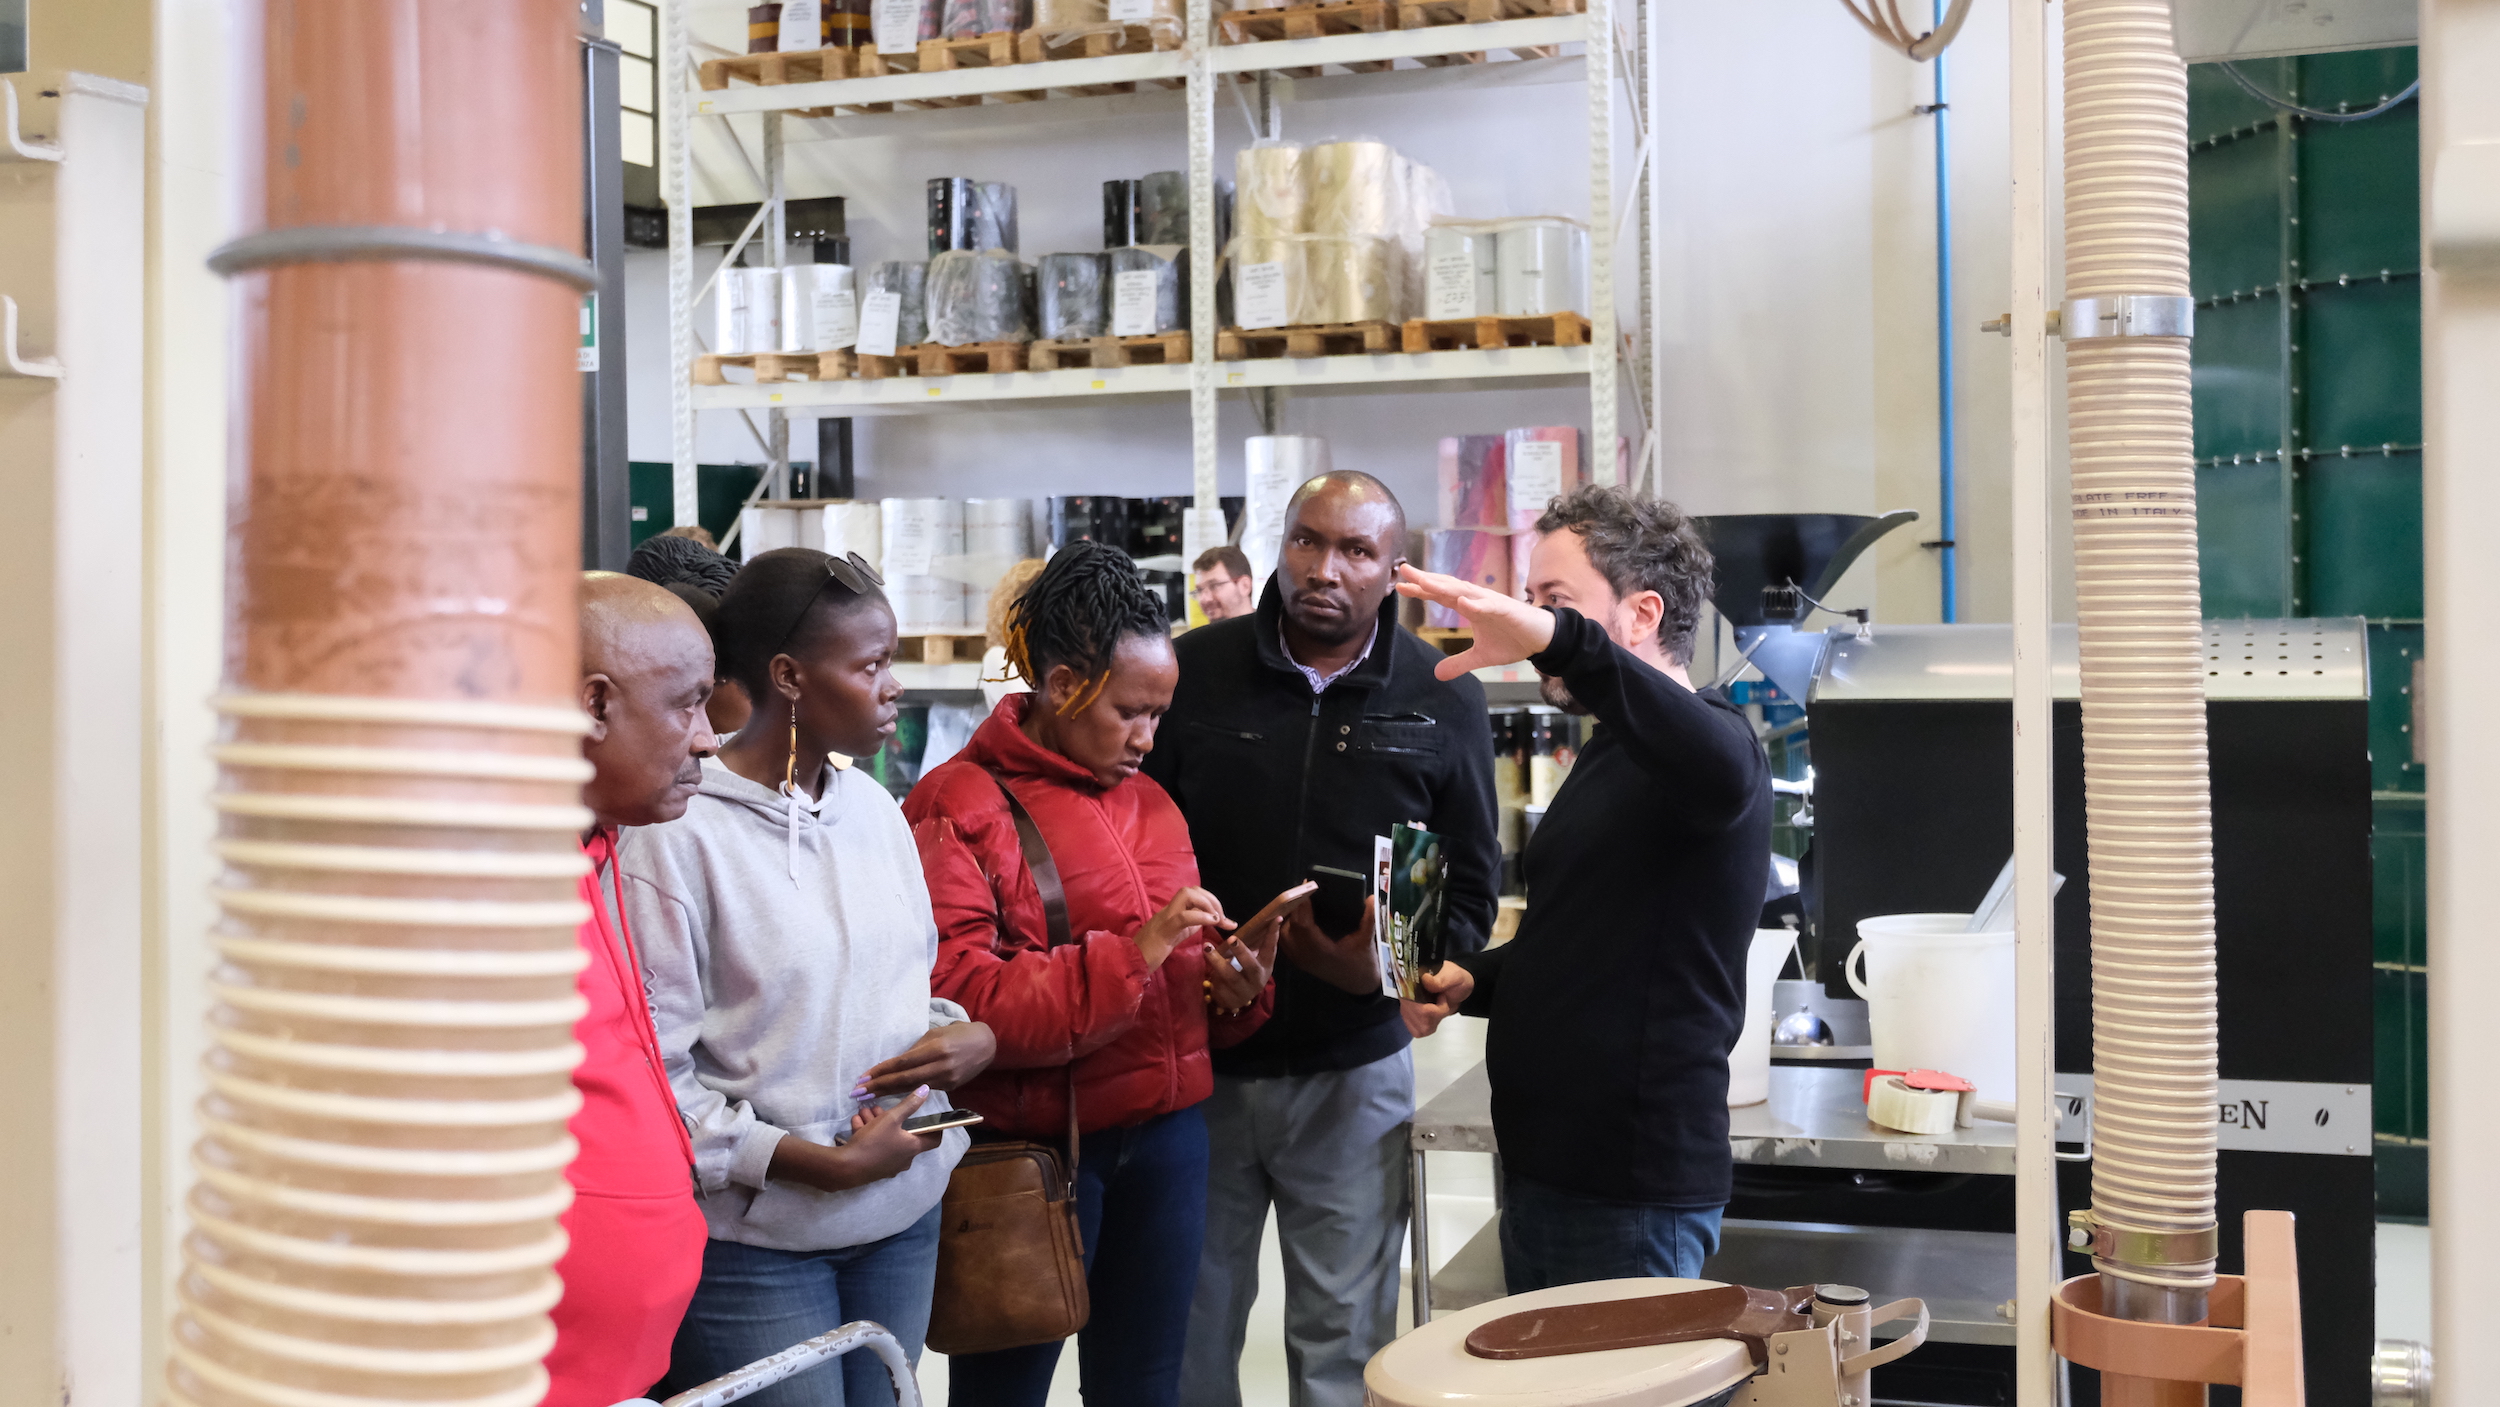 : La delegazione kenyana visita la torrefazione Pascucci, approfondendo il tema della lavorazione del caffè